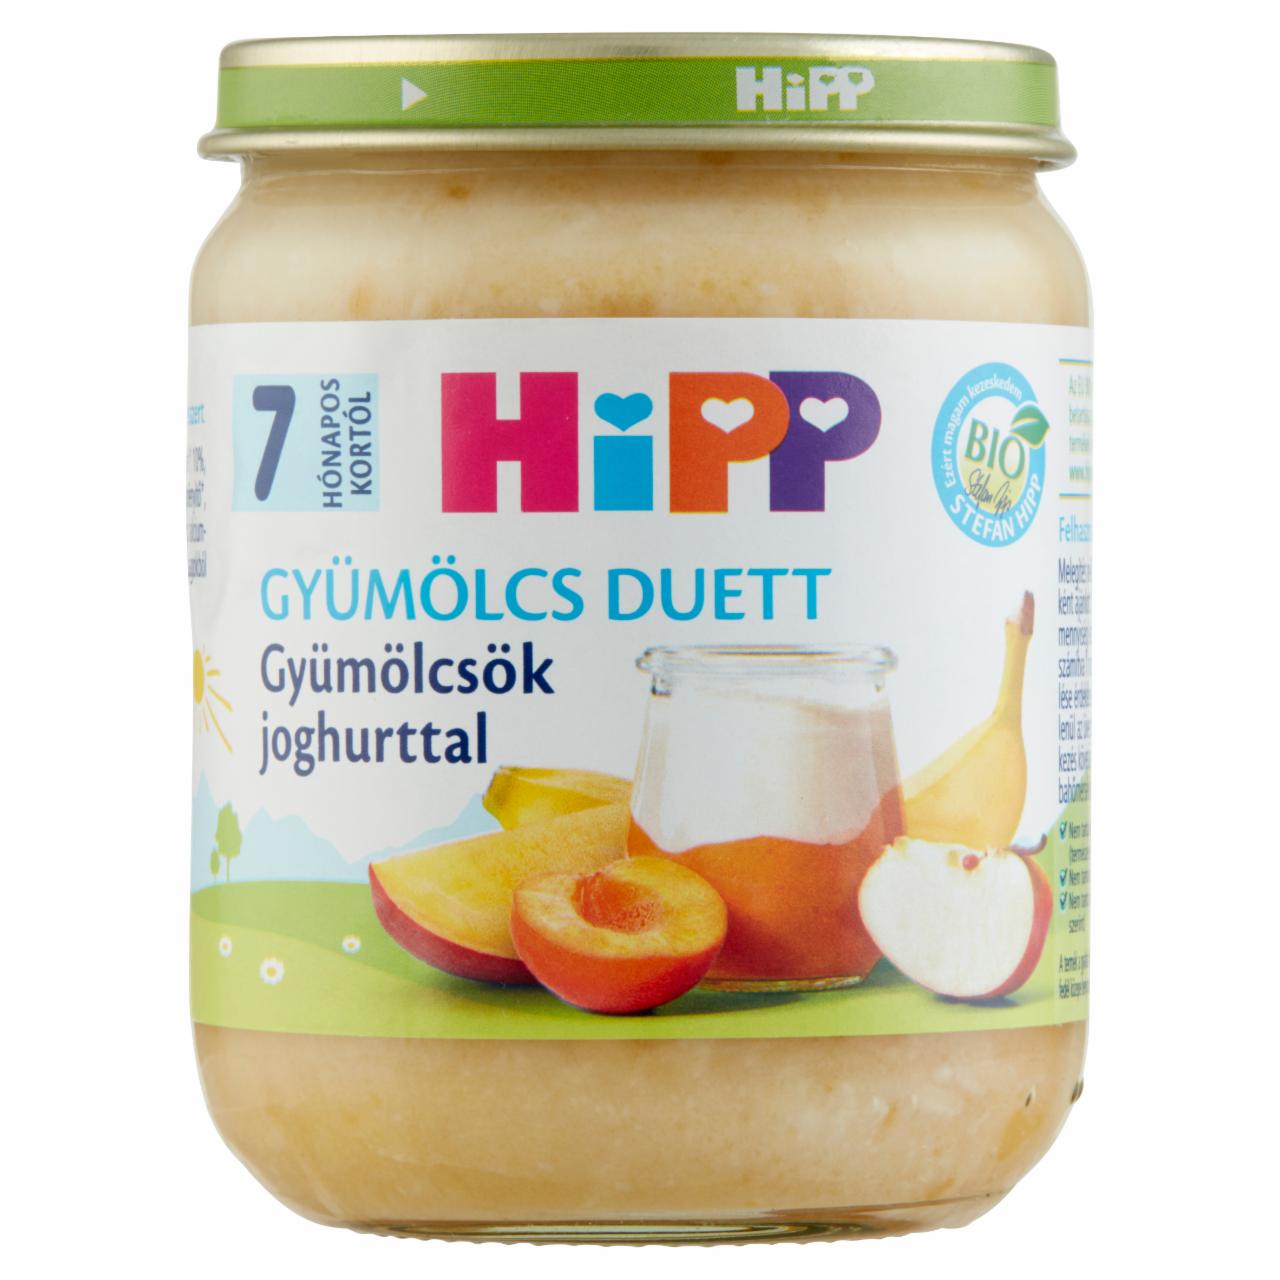 Képek - HiPP Gyümölcs Duett BIO gyümölcsök joghurttal bébidesszert 7 hónapos kortól 160 g